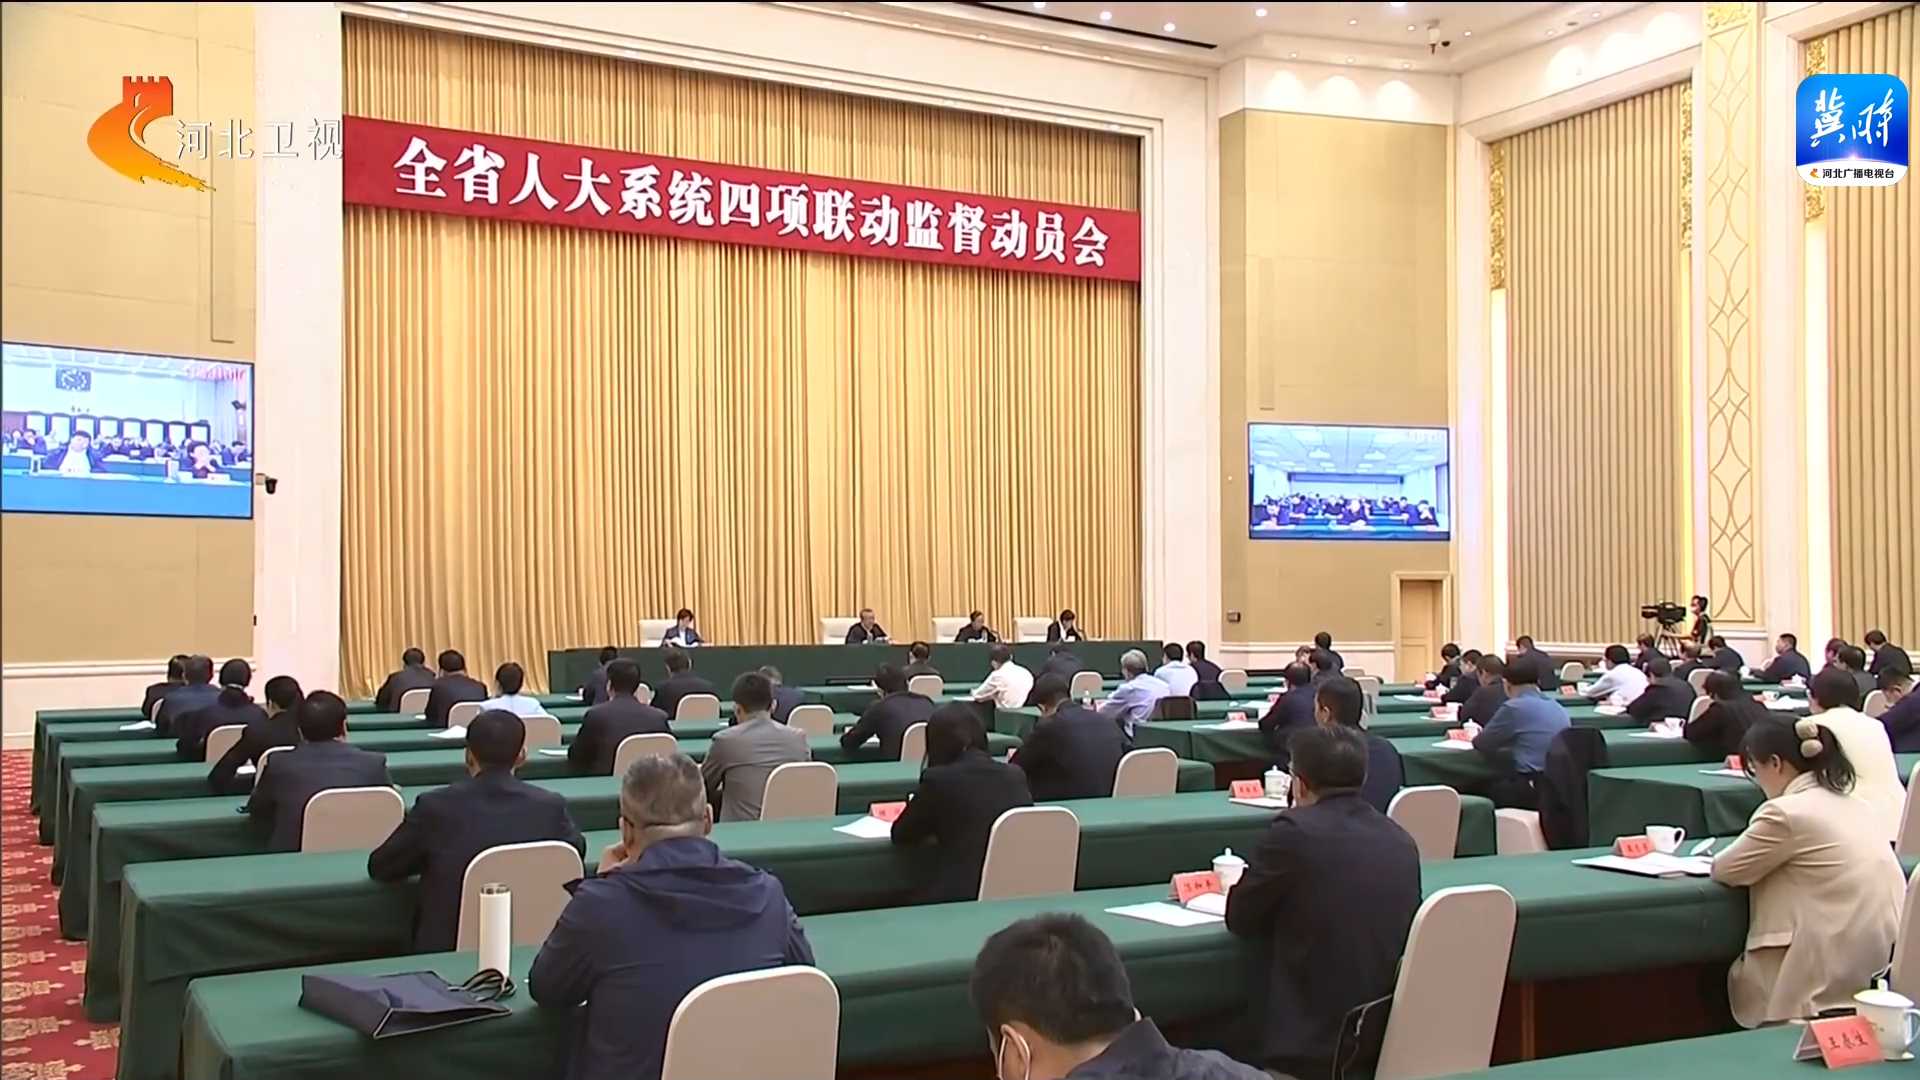 全立博体育系统四项联动监督动员会召开 倪岳峰作出批示